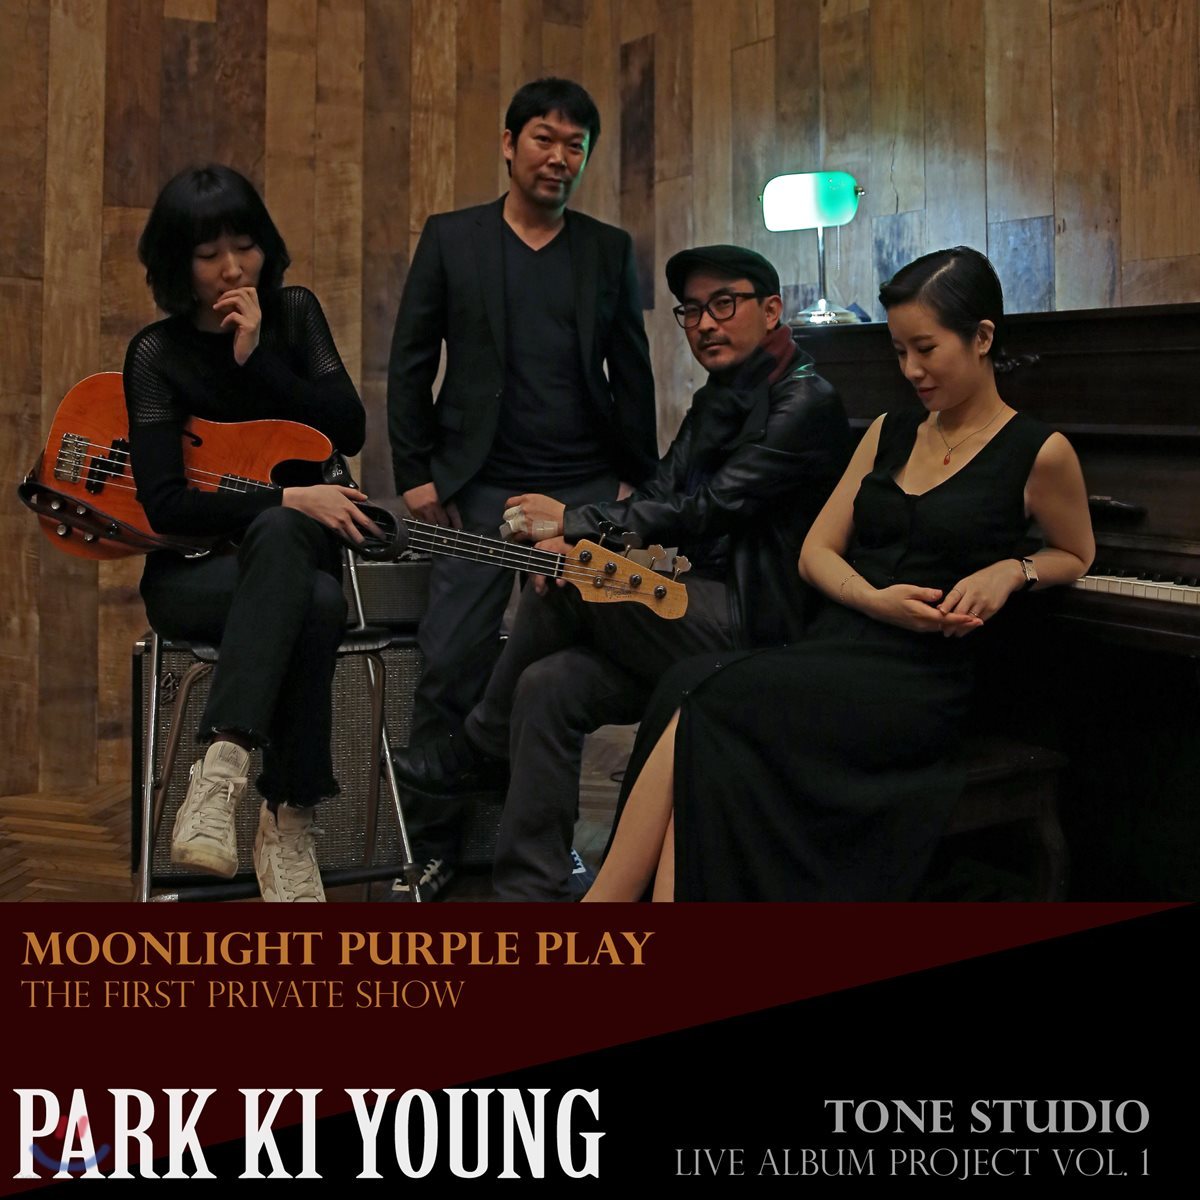 박기영 - Moonlight Purple Play & Tone Studio - The first private show, Live Album Project Vol.1 [PARK KI YOUNG]